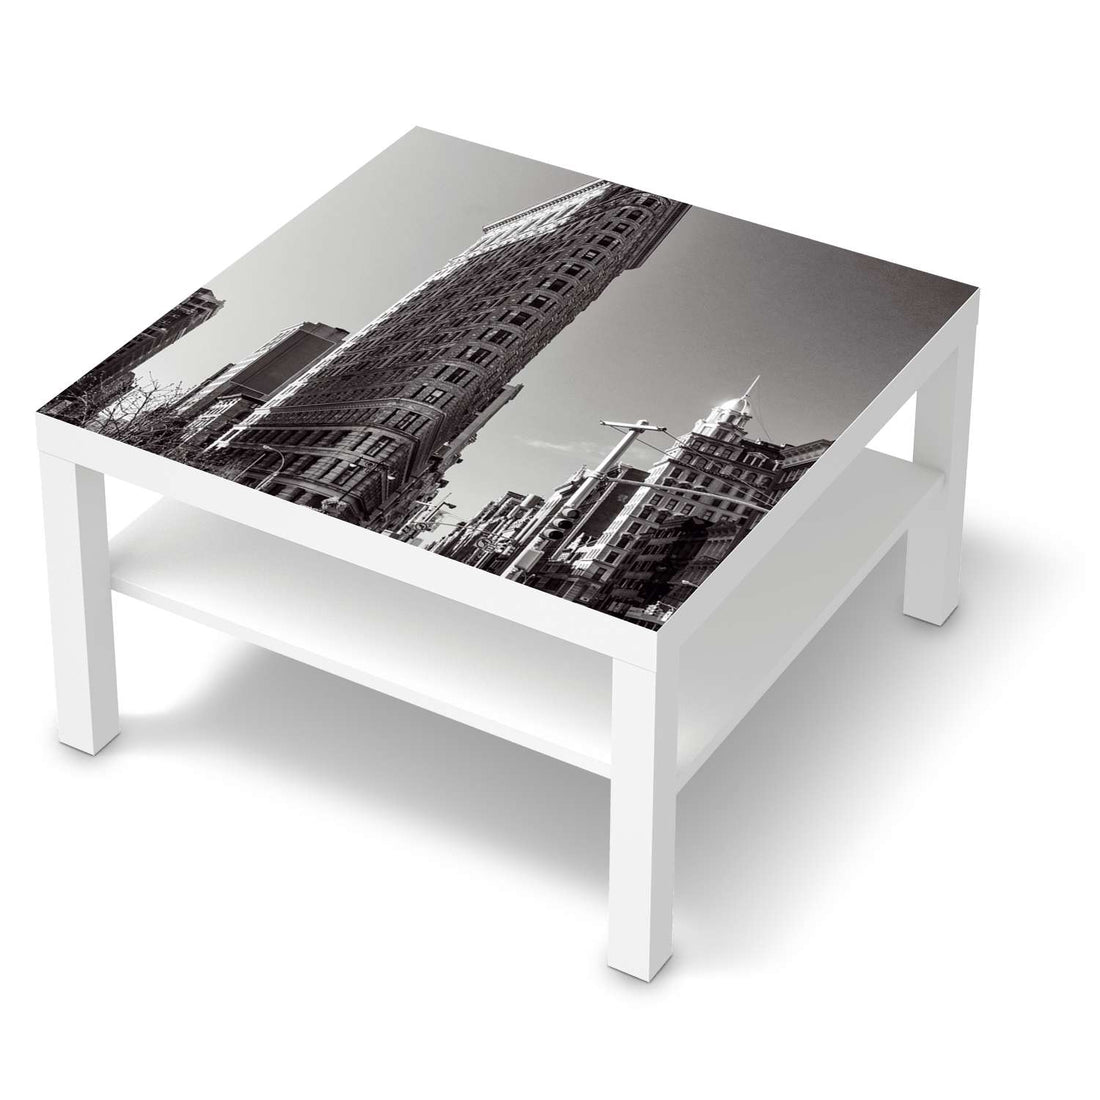 Selbstklebende Folie Manhattan - IKEA Lack Tisch 78x78 cm - weiss